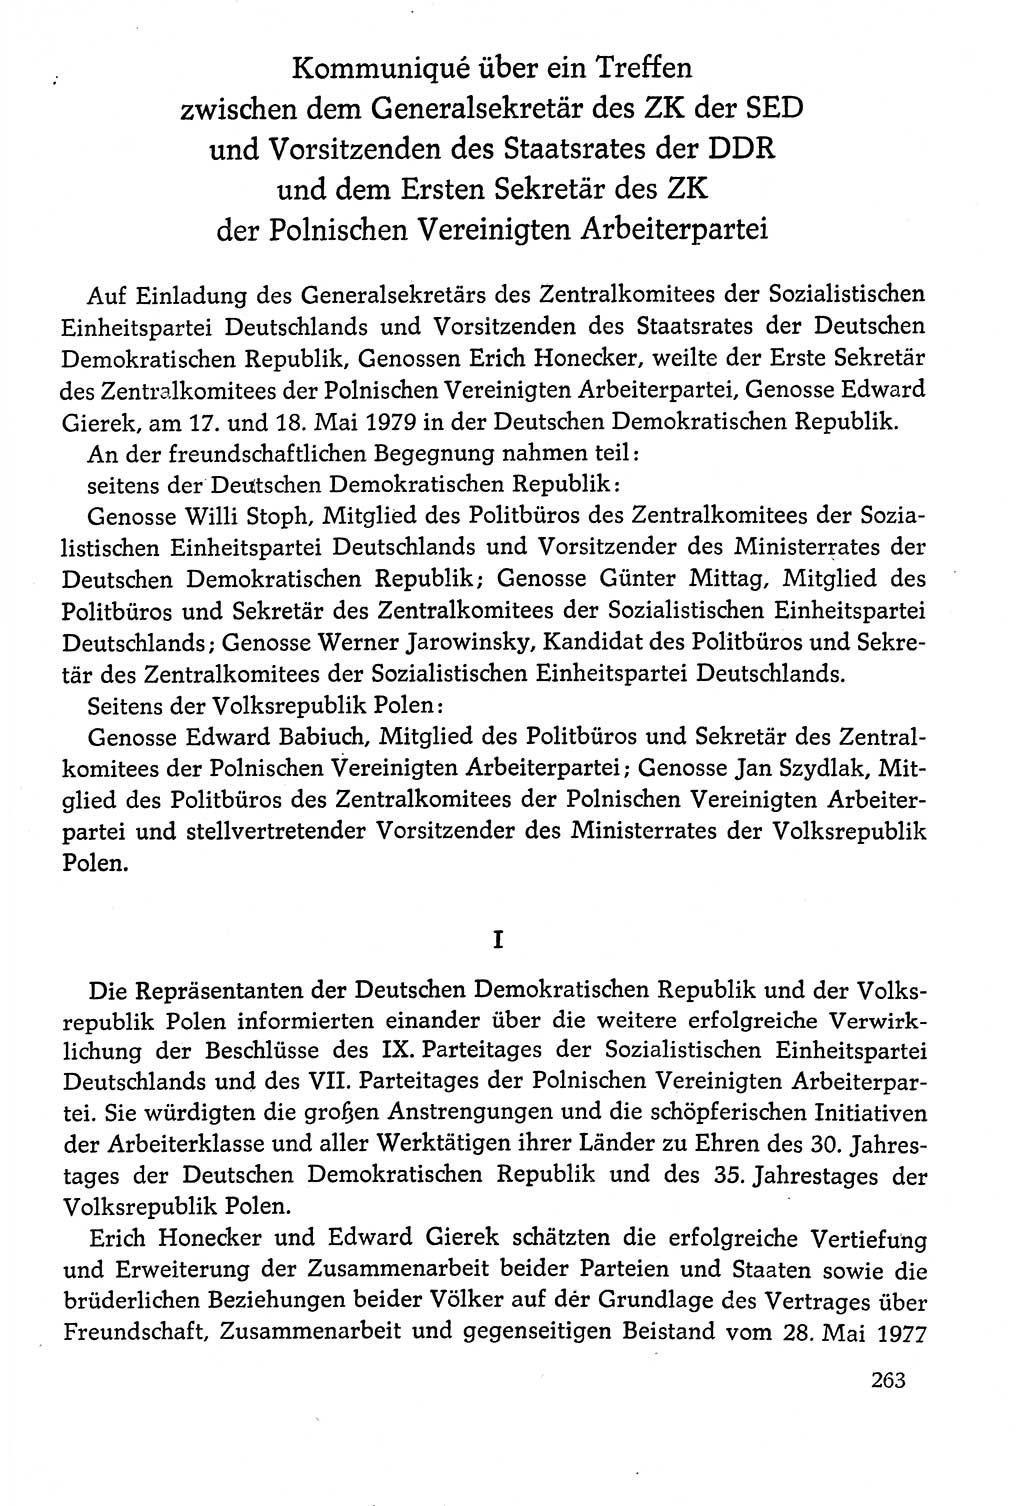 Dokumente der Sozialistischen Einheitspartei Deutschlands (SED) [Deutsche Demokratische Republik (DDR)] 1978-1979, Seite 263 (Dok. SED DDR 1978-1979, S. 263)